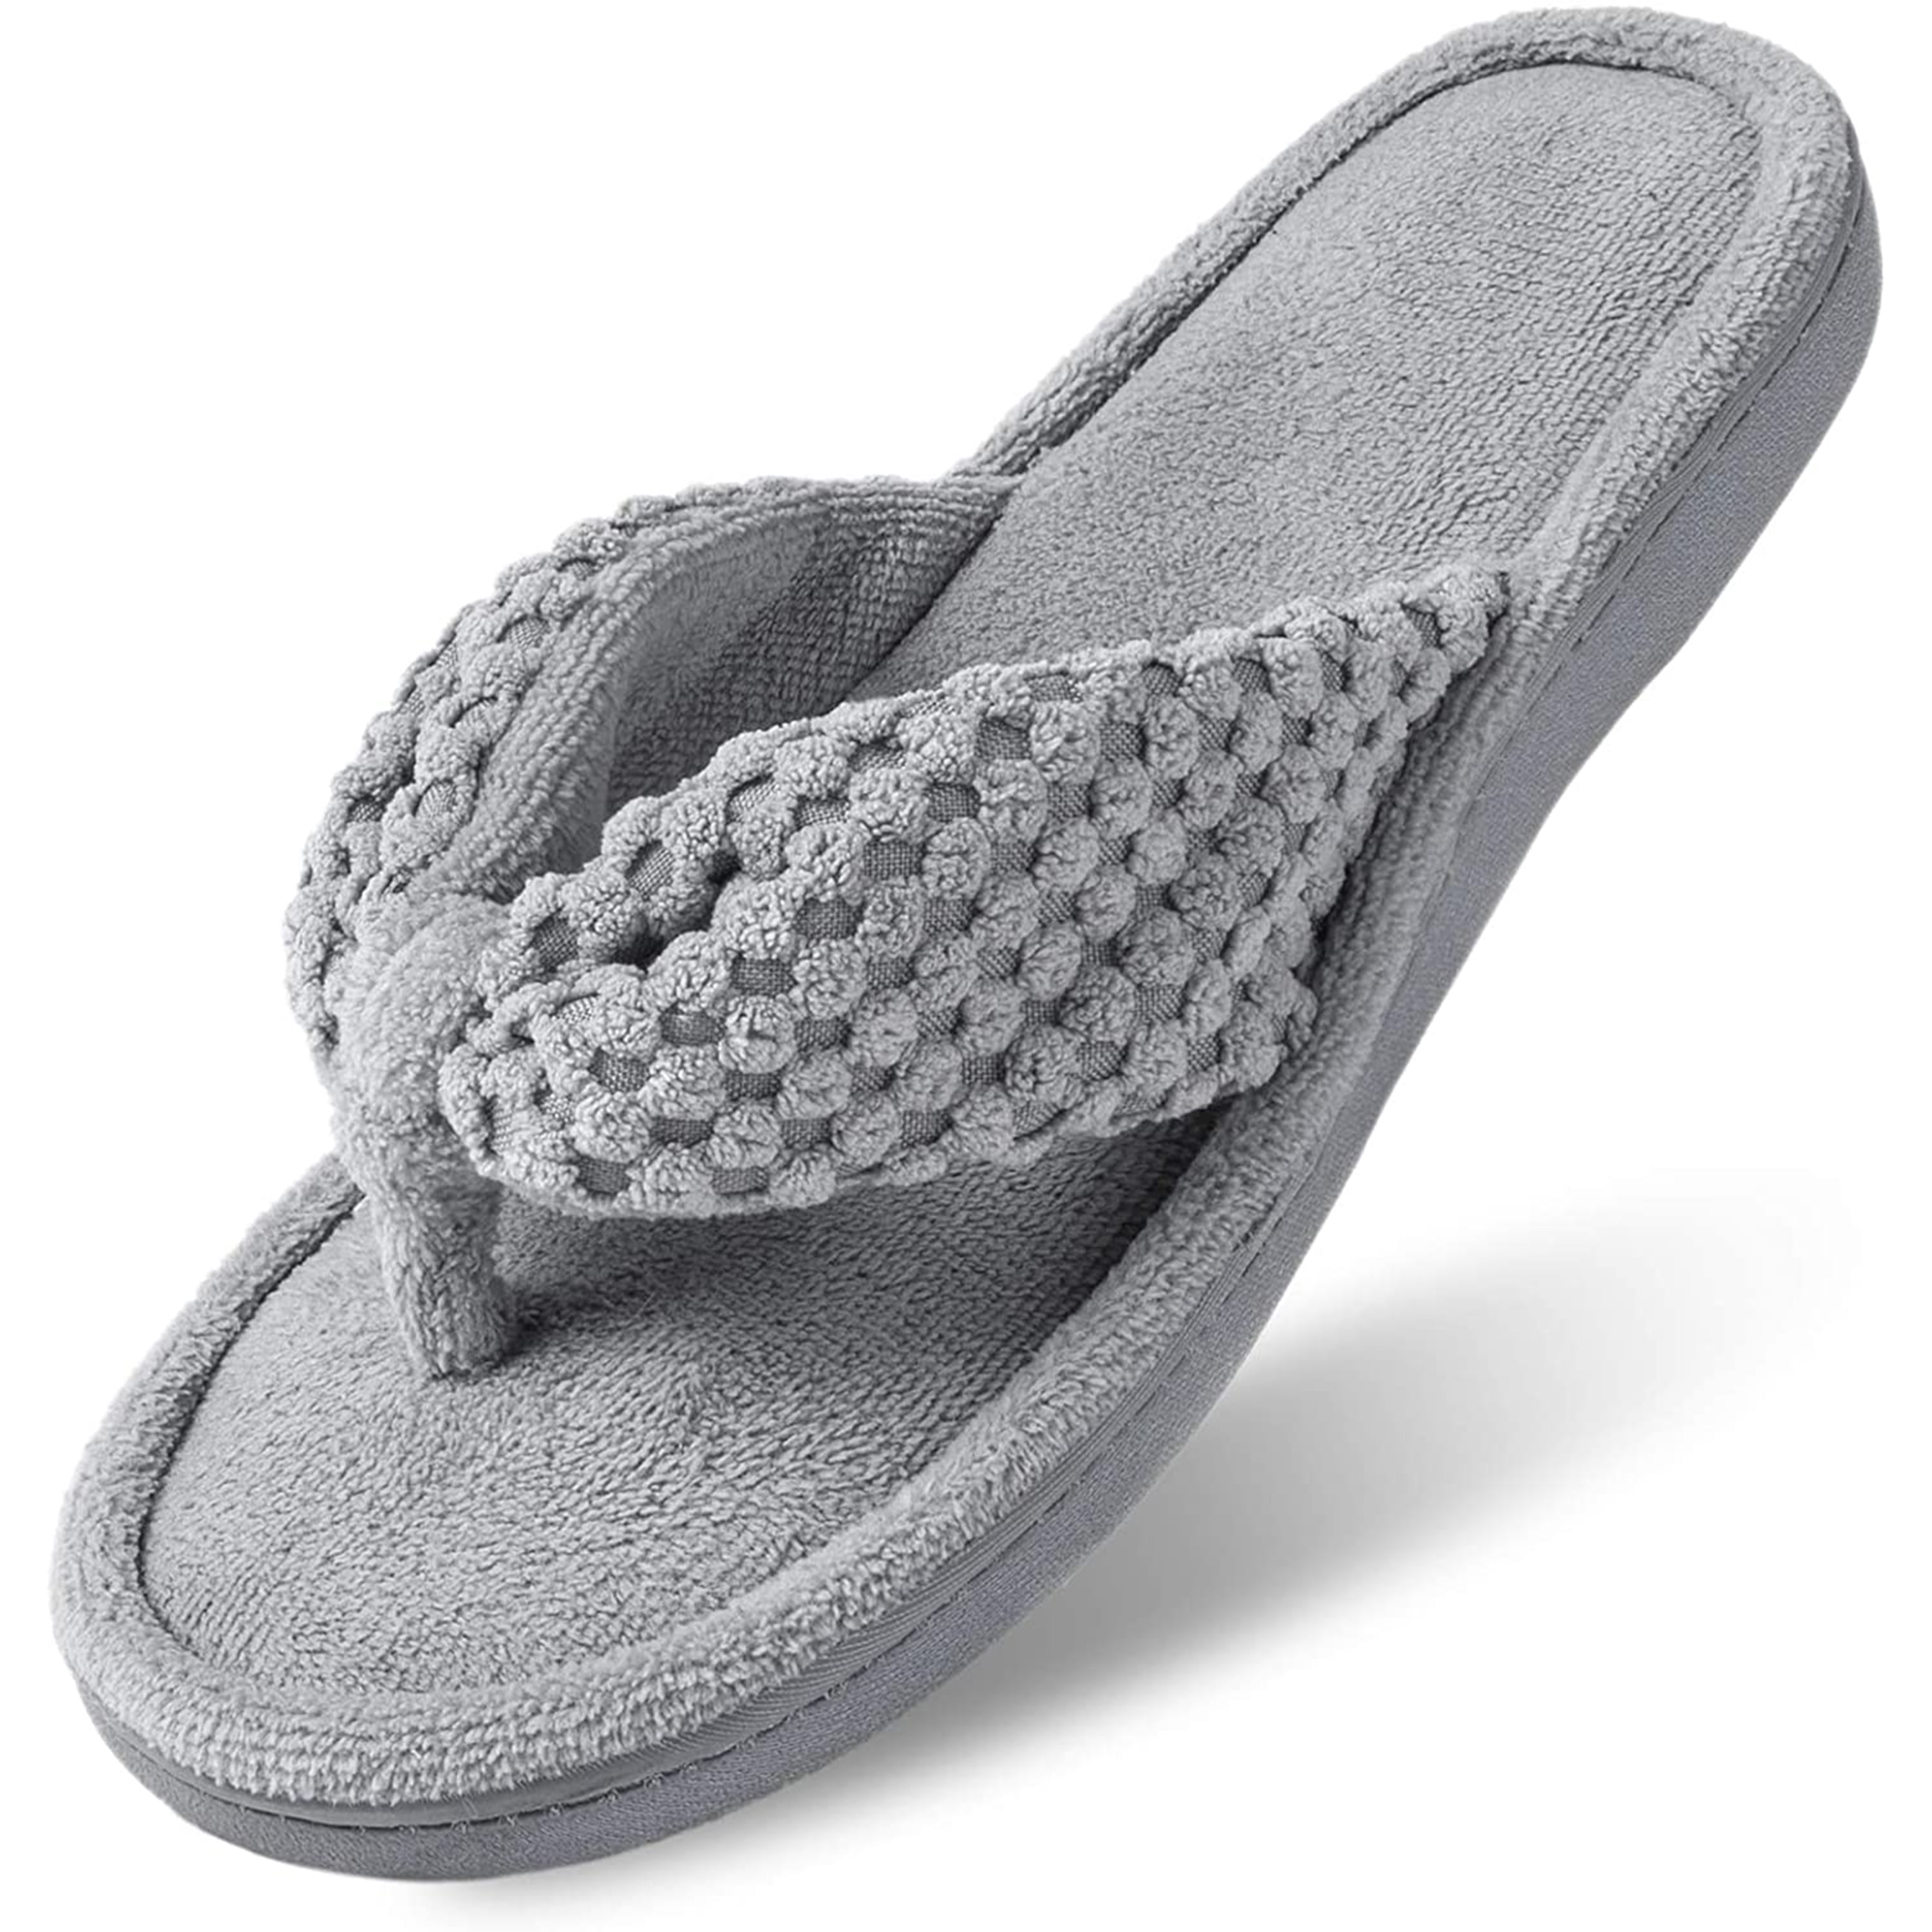 DODOING Women's Memory Foam Flip Flop House Indoor Slippers with